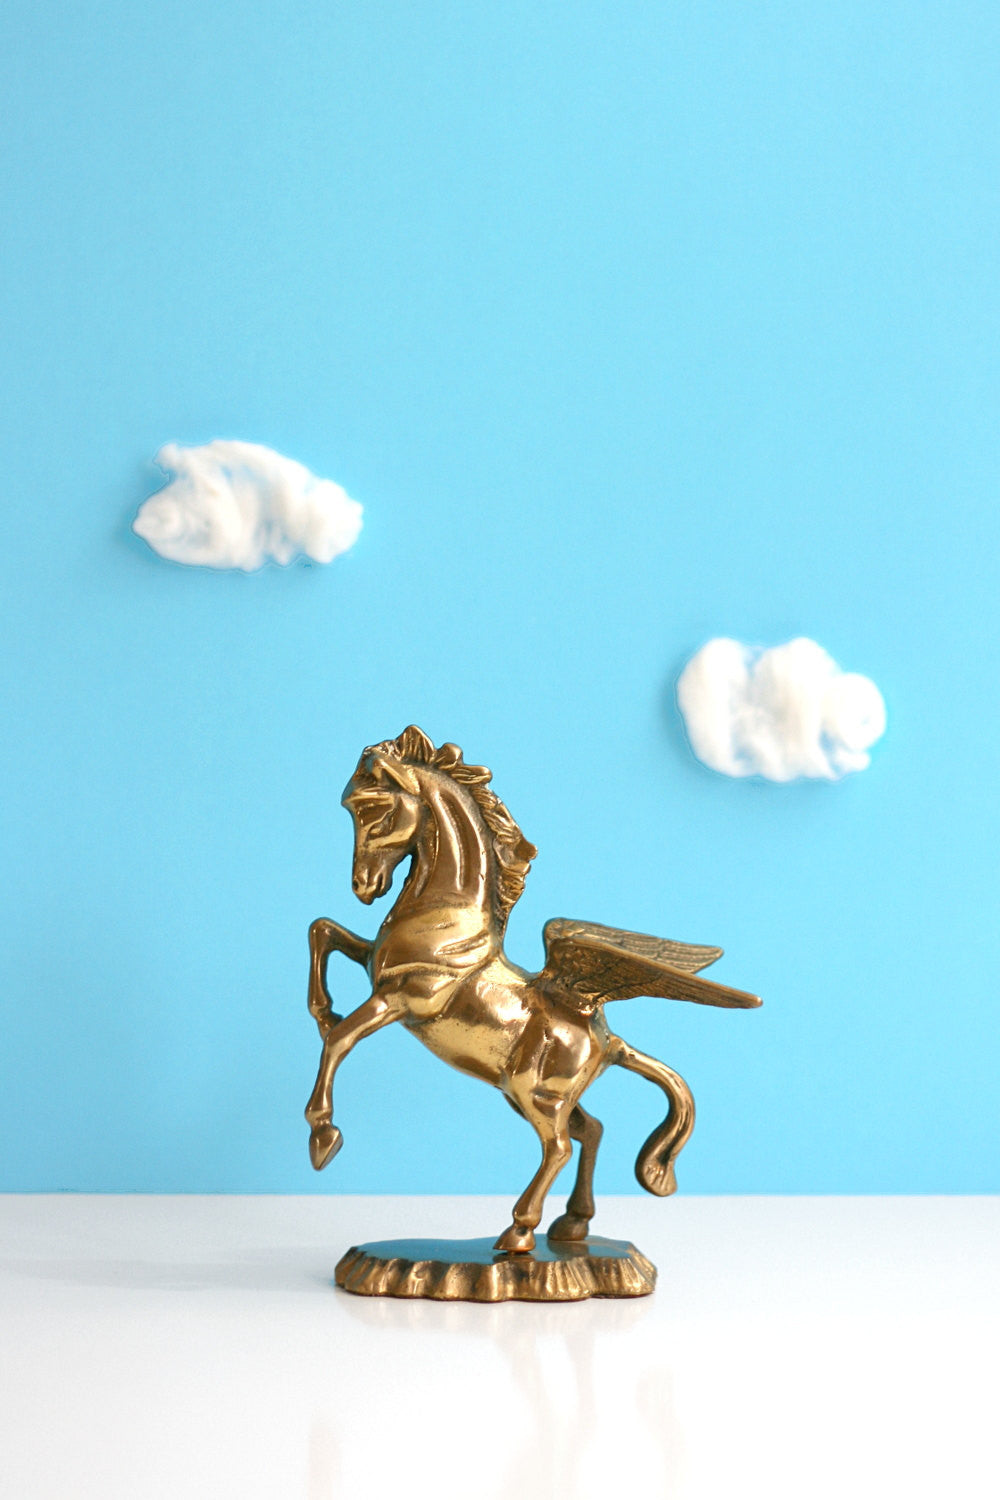 SOLD - Vintage Brass Pegasus Figurine